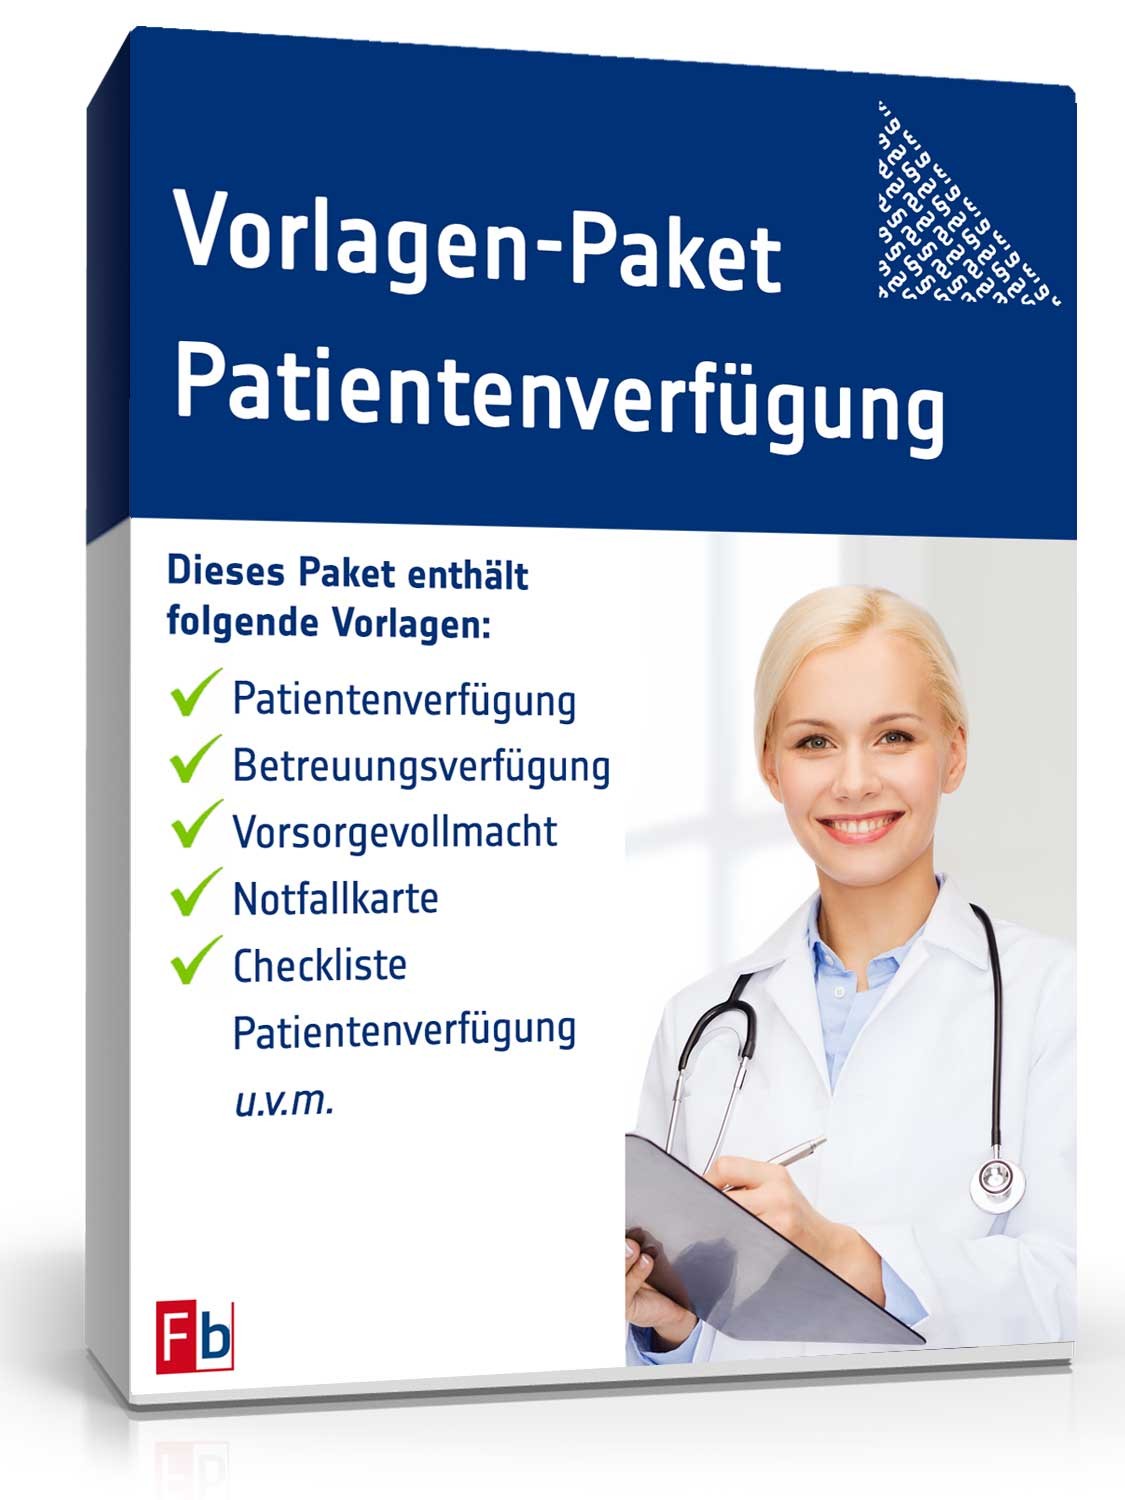 Hauptbild des Produkts: Vorlagen-Paket Patientenverfügung